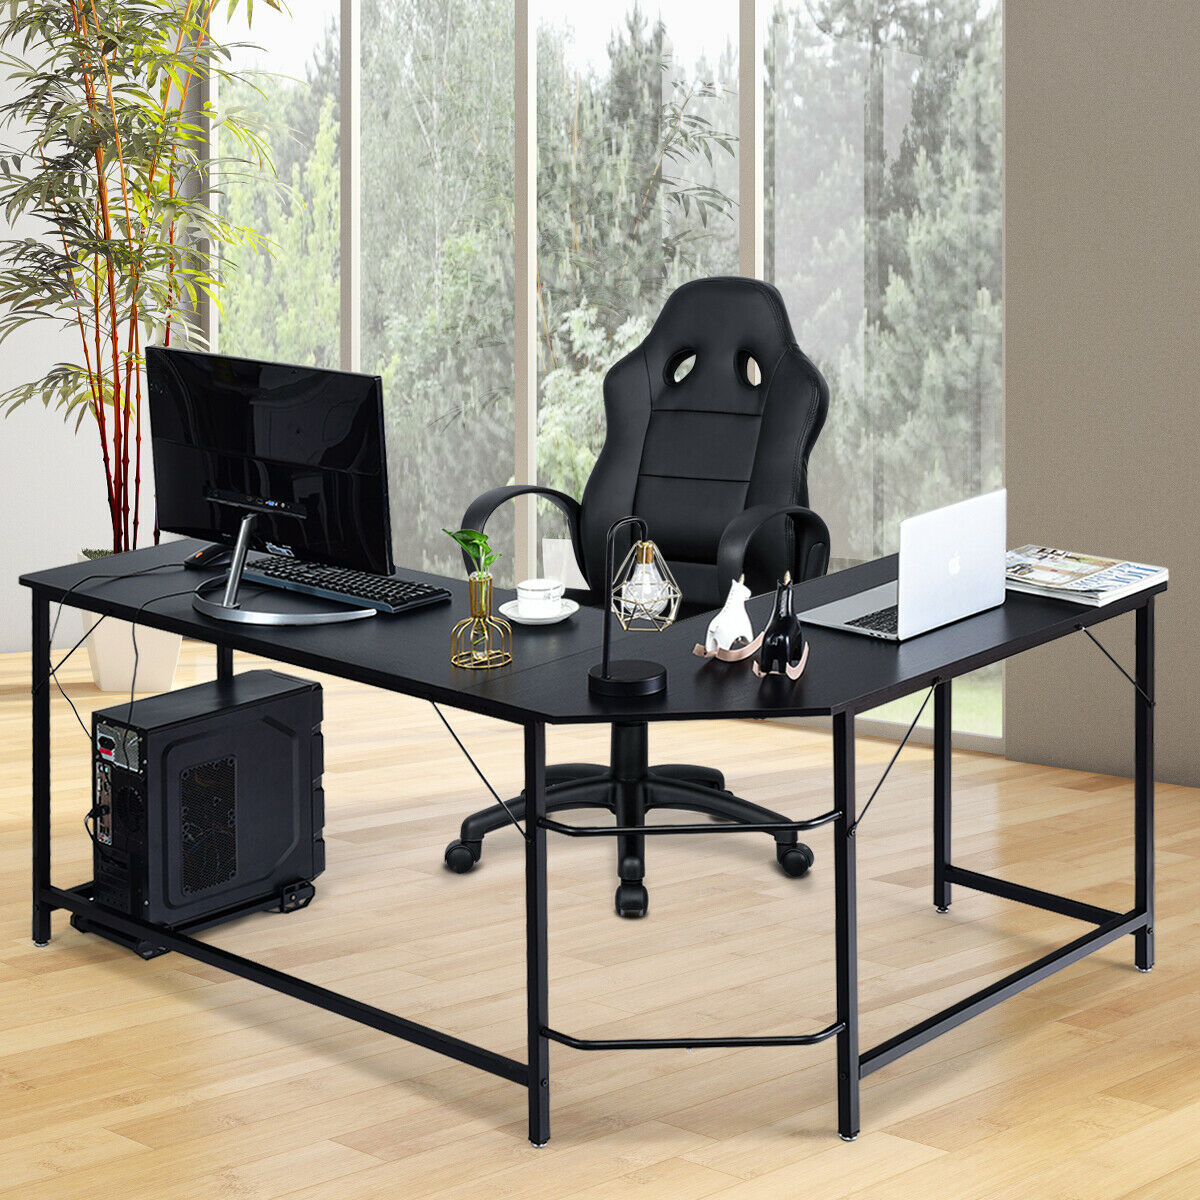 L Shaped Desk Corner Computer Desk PC Laptop Gaming Table Workstation Black/Natural/Brown - Black